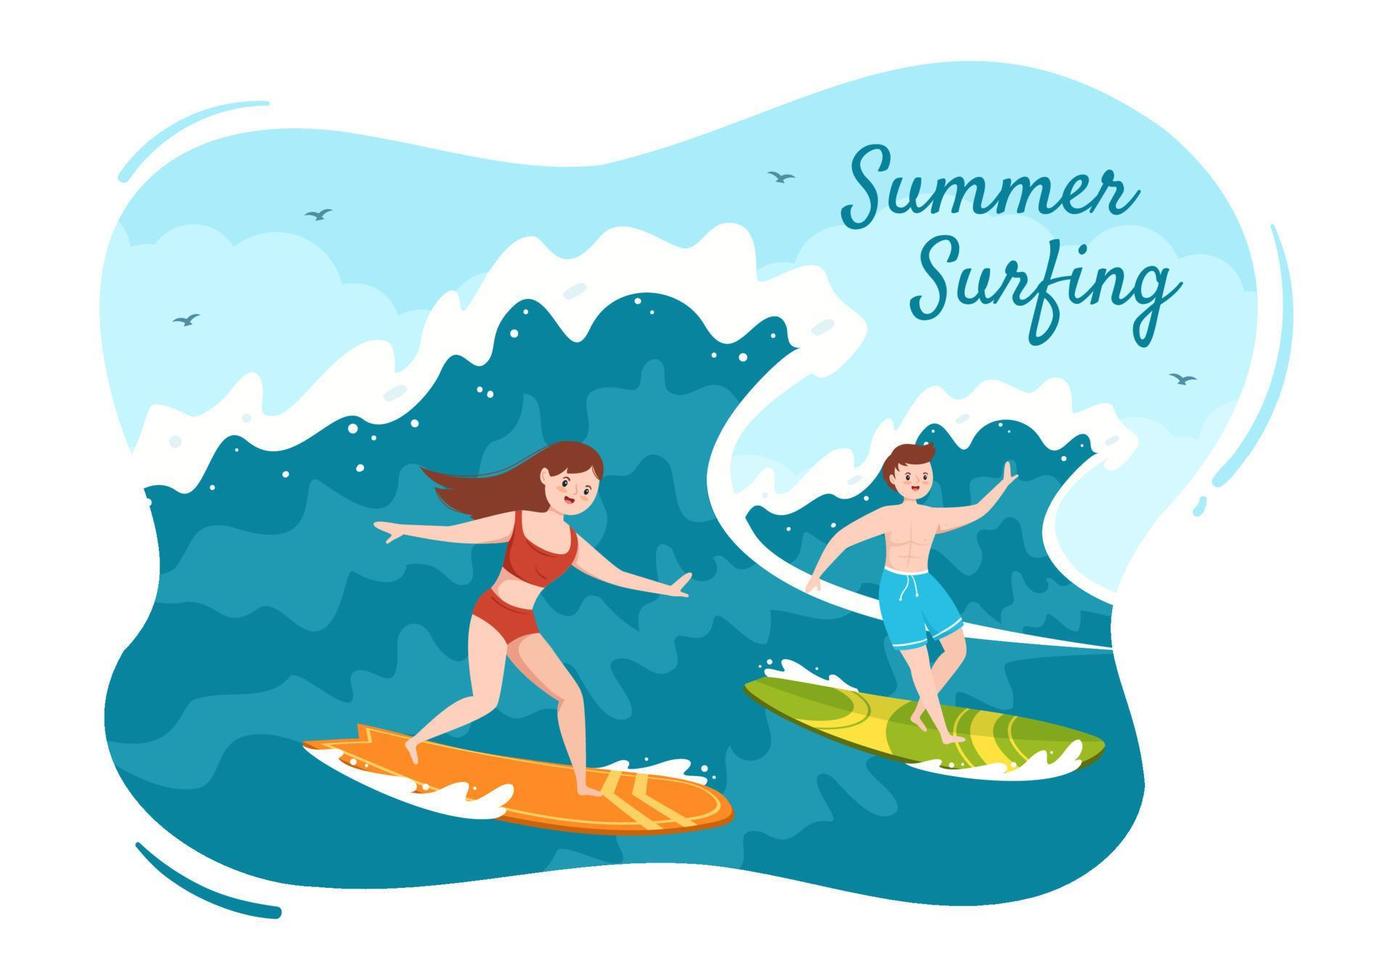 surf de verano de actividades deportivas acuáticas ilustración de dibujos animados con olas oceánicas en tablas de surf o flotando en tablas de remo en estilo plano vector